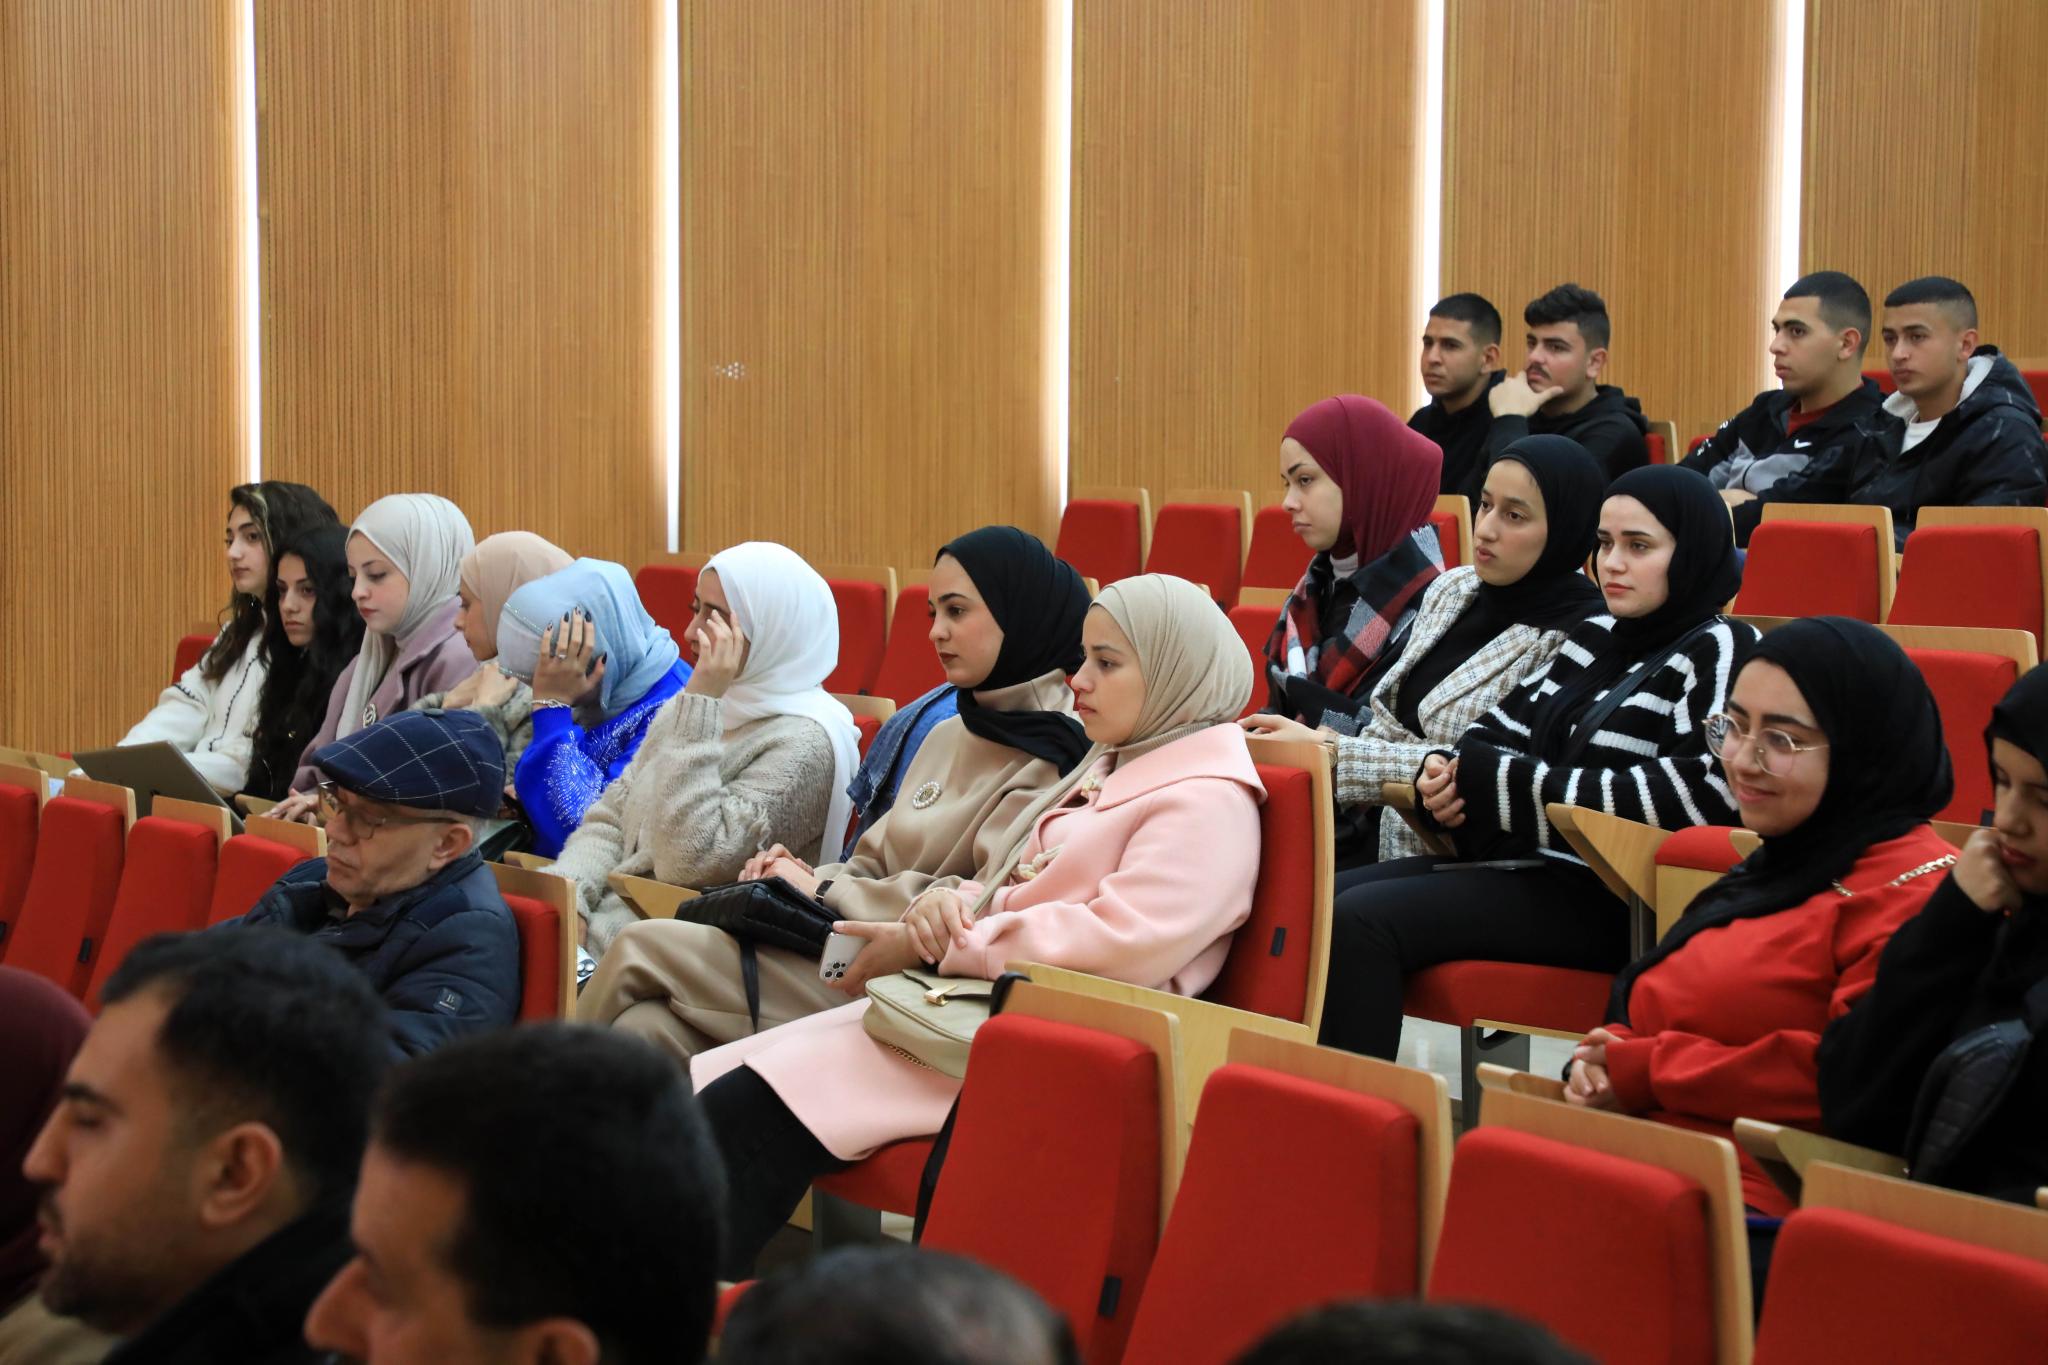 الجامعة العربية الأمريكية تعقد ندوة بعنوان مهنة تخمين العقارات: الواقع والتحديات